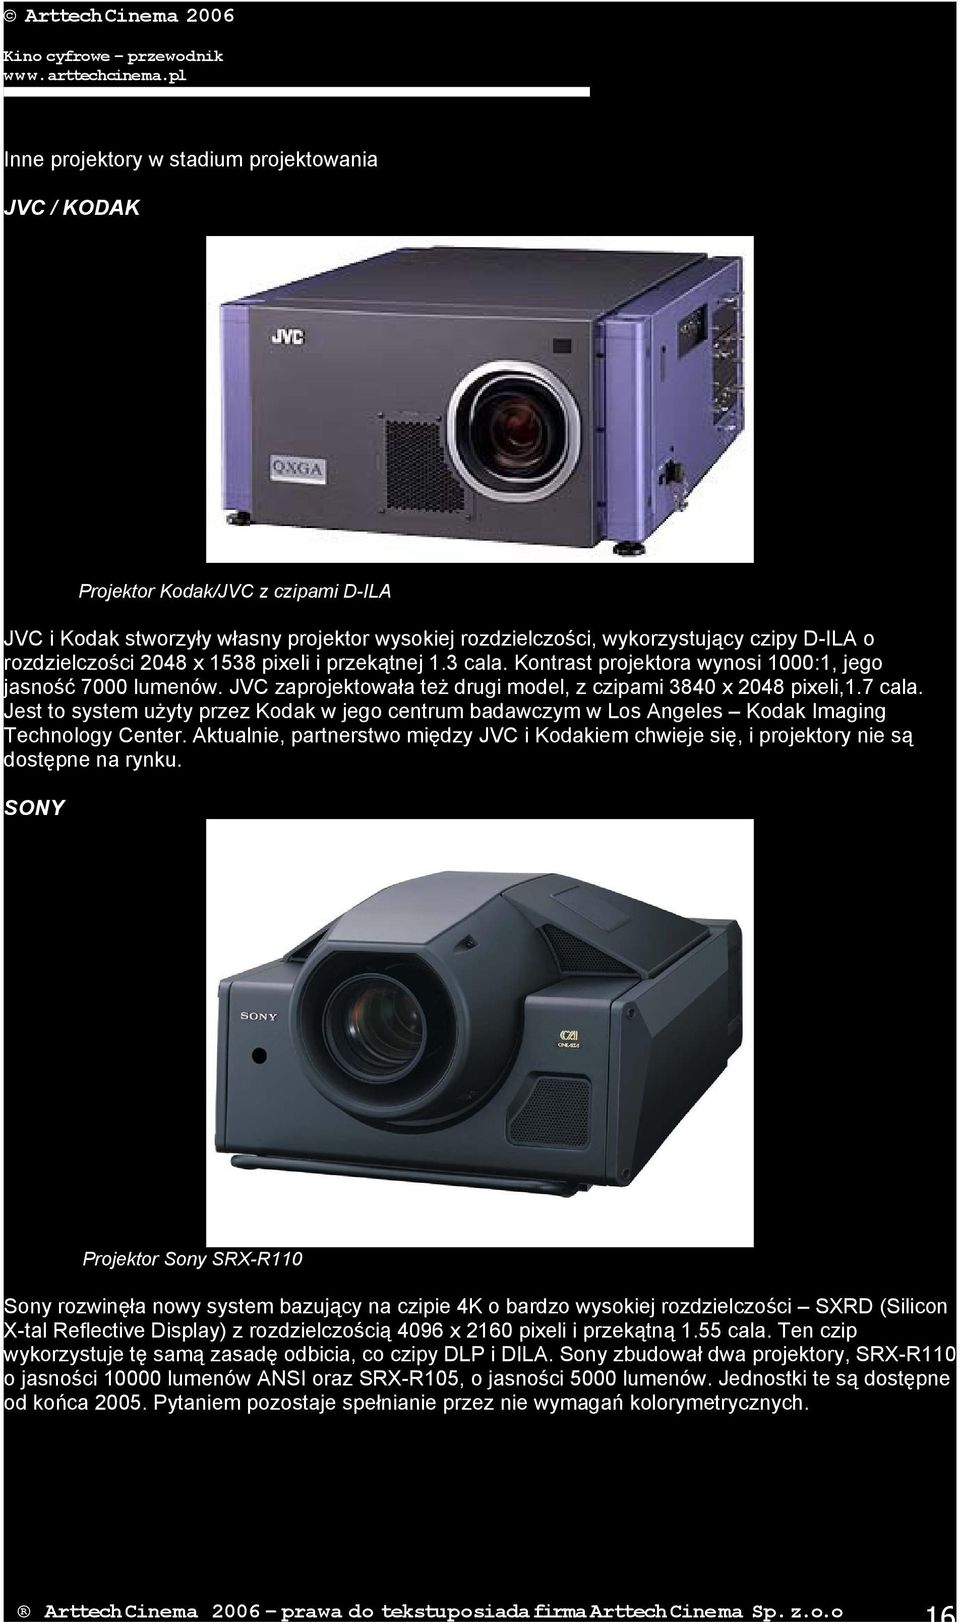 Jest to system użyty przez Kodak w jego centrum badawczym w Los Angeles Kodak Imaging Technology Center.